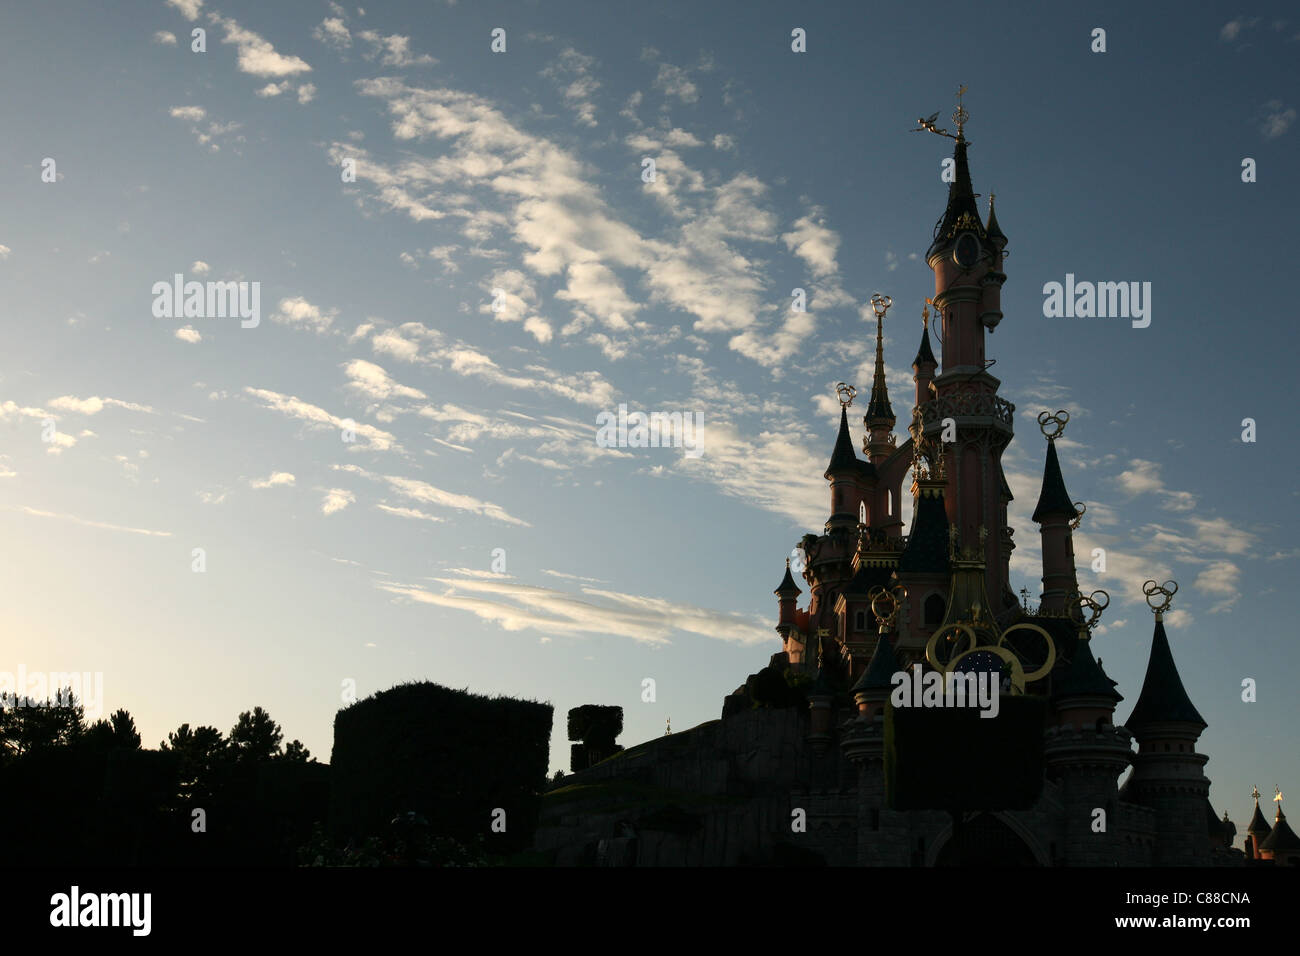 Château de La Belle au bois dormant à Disneyland Paris, France. Banque D'Images